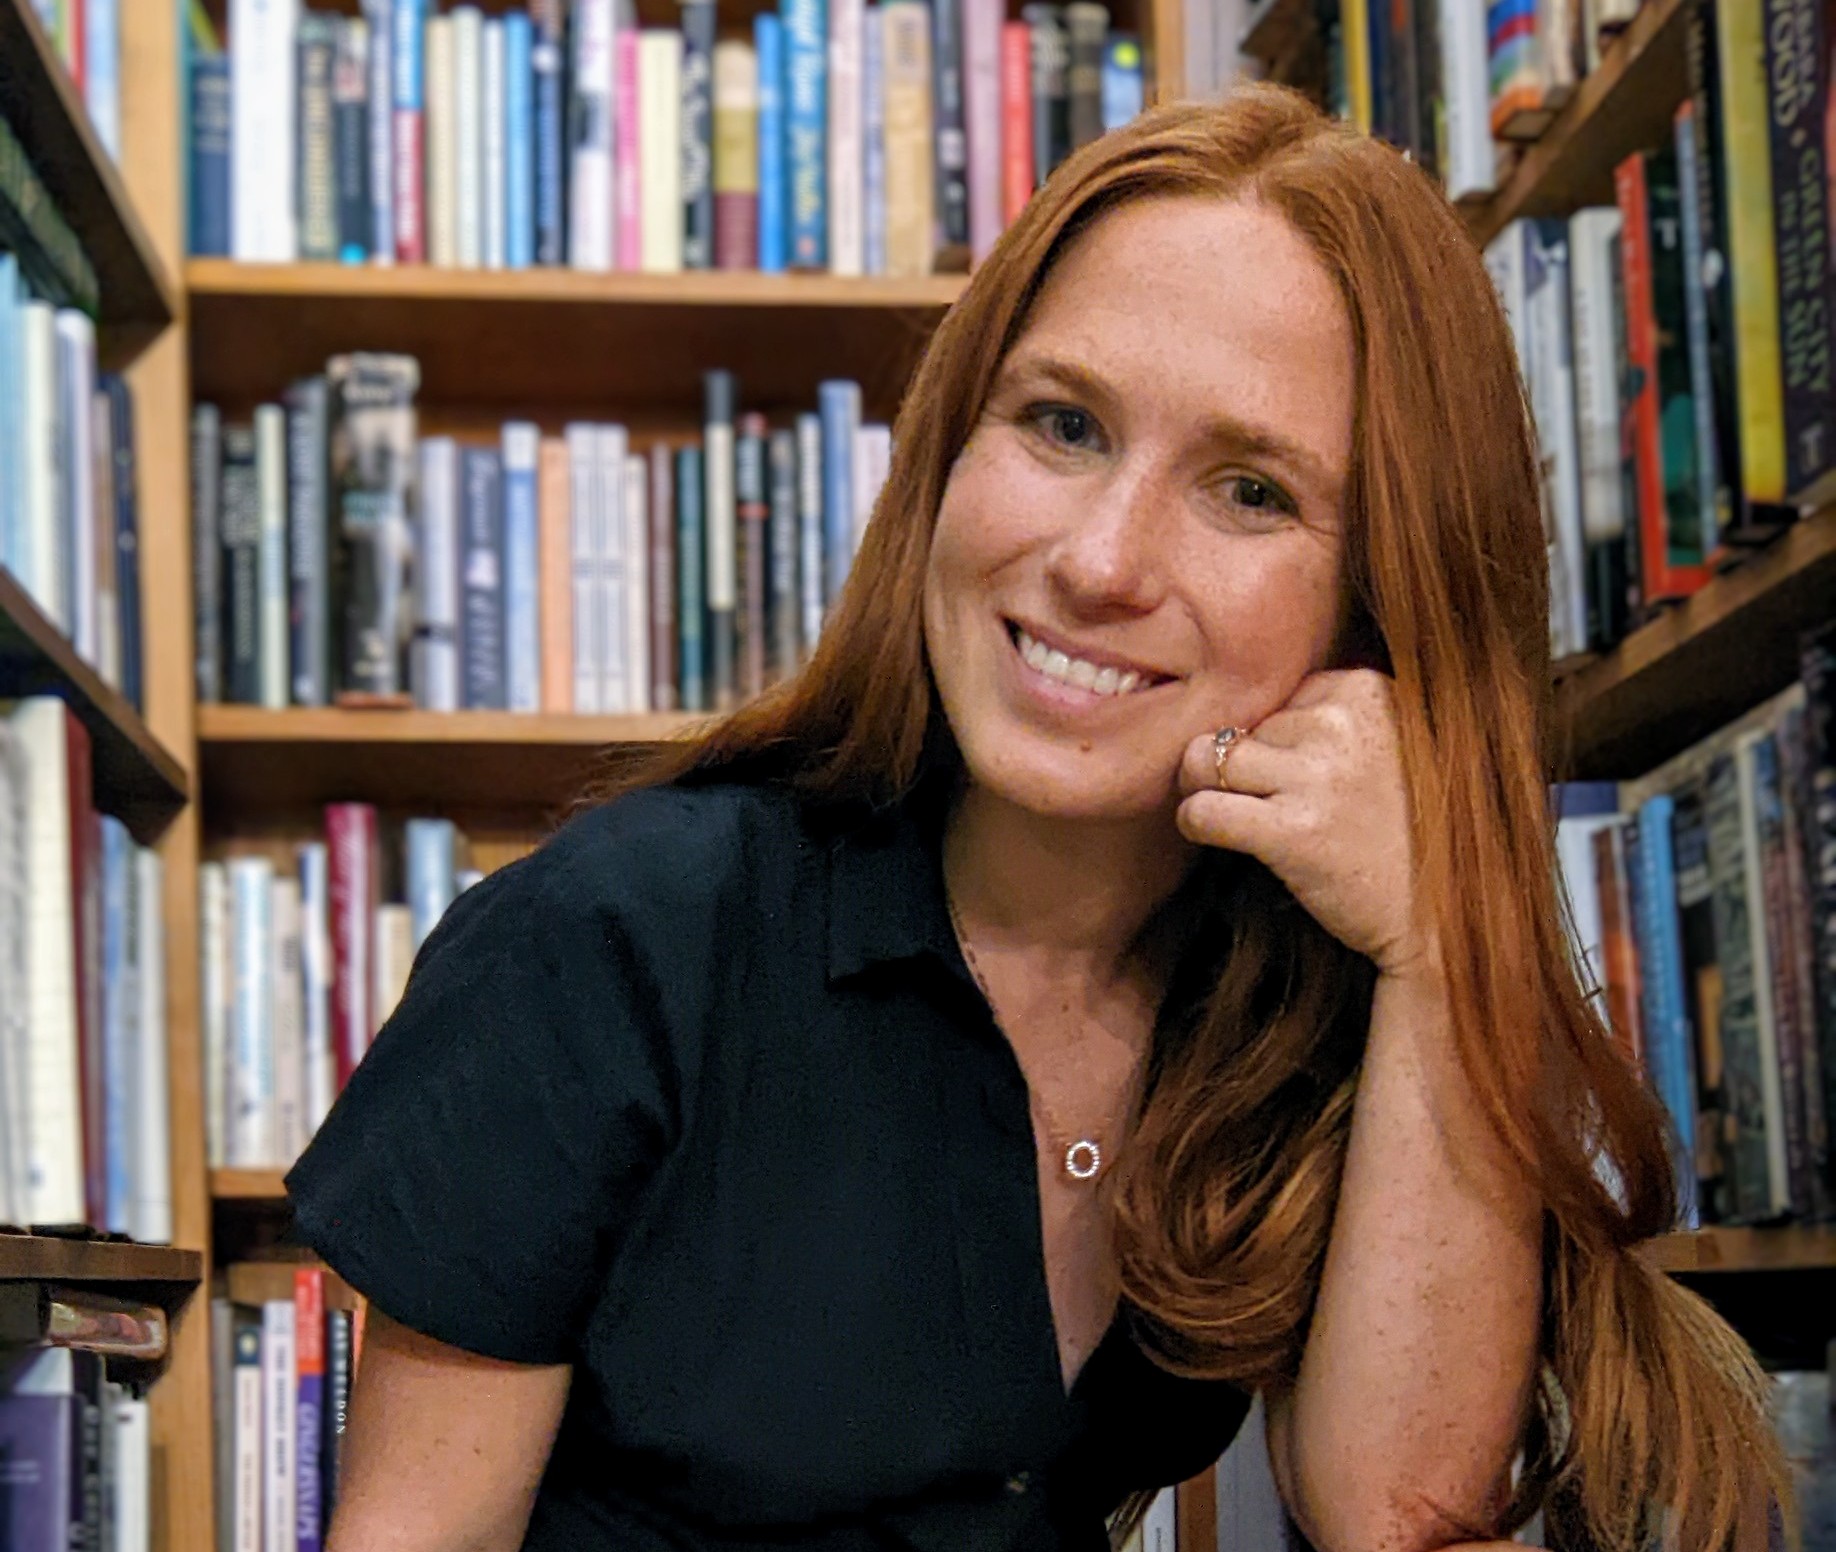 Megan Newsome in front of bookshelves